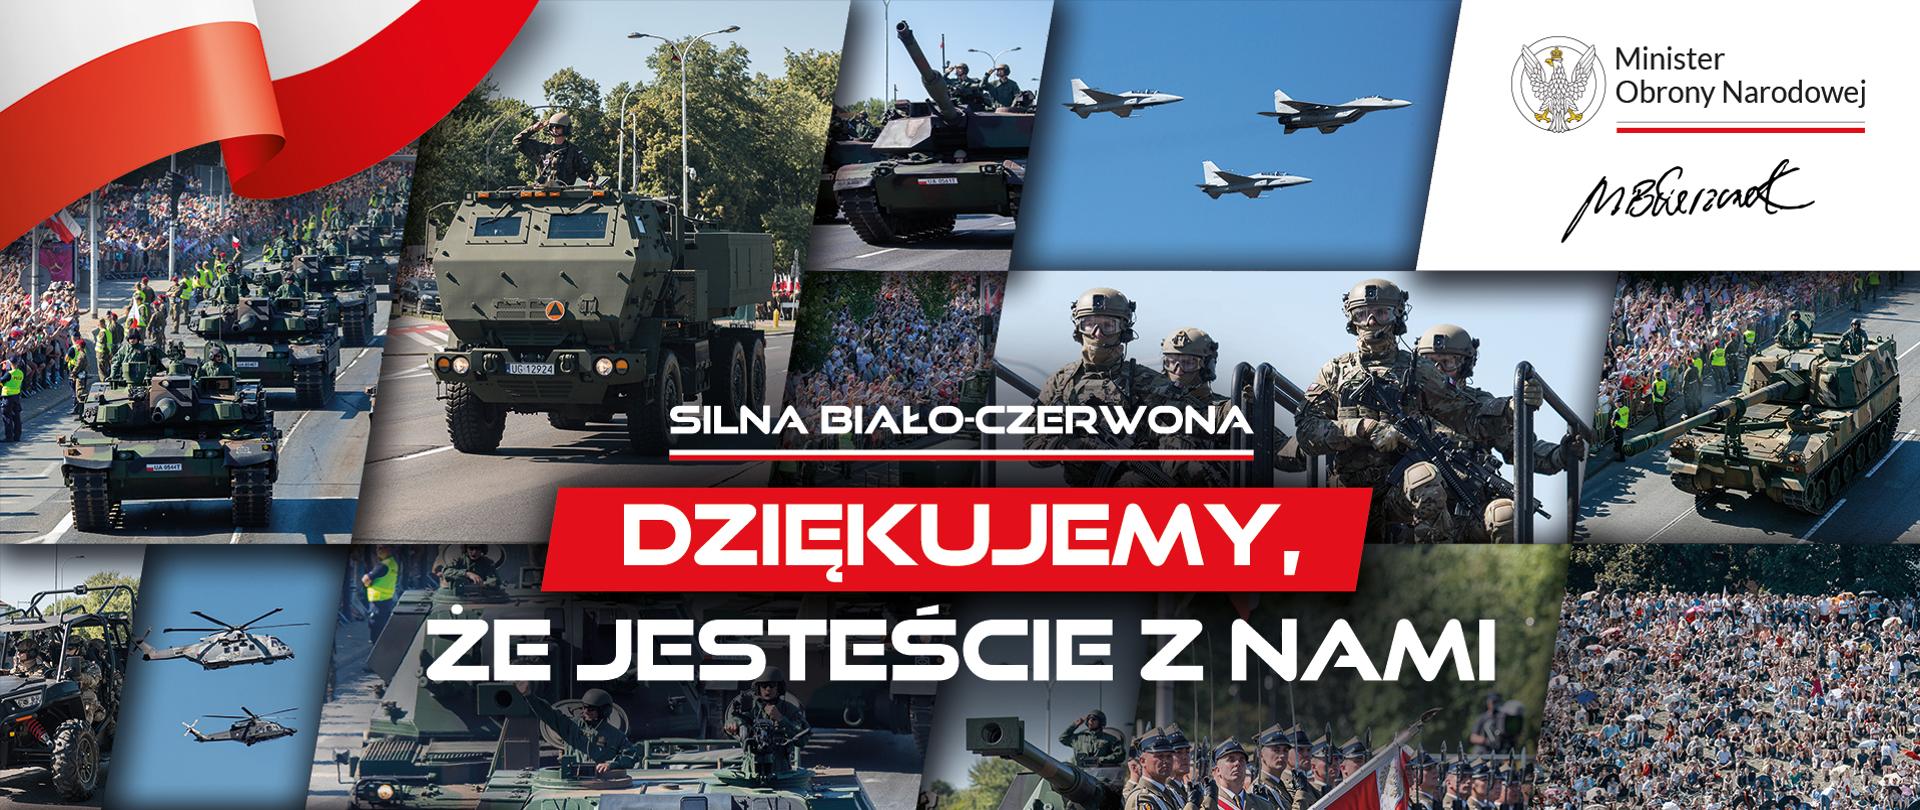 SILNA BIAŁO-CZERWONA. SILNA BIAŁO-CZERWONA
Kolaż zdjęć wojskowych (czołgi, helikoptery, samochody, żołnierze). W lewym górnym rogu znajduje się flaga Polski, a po prawej na górze podpis Ministra Obrony Narodowej Mariusza Błaszczaka